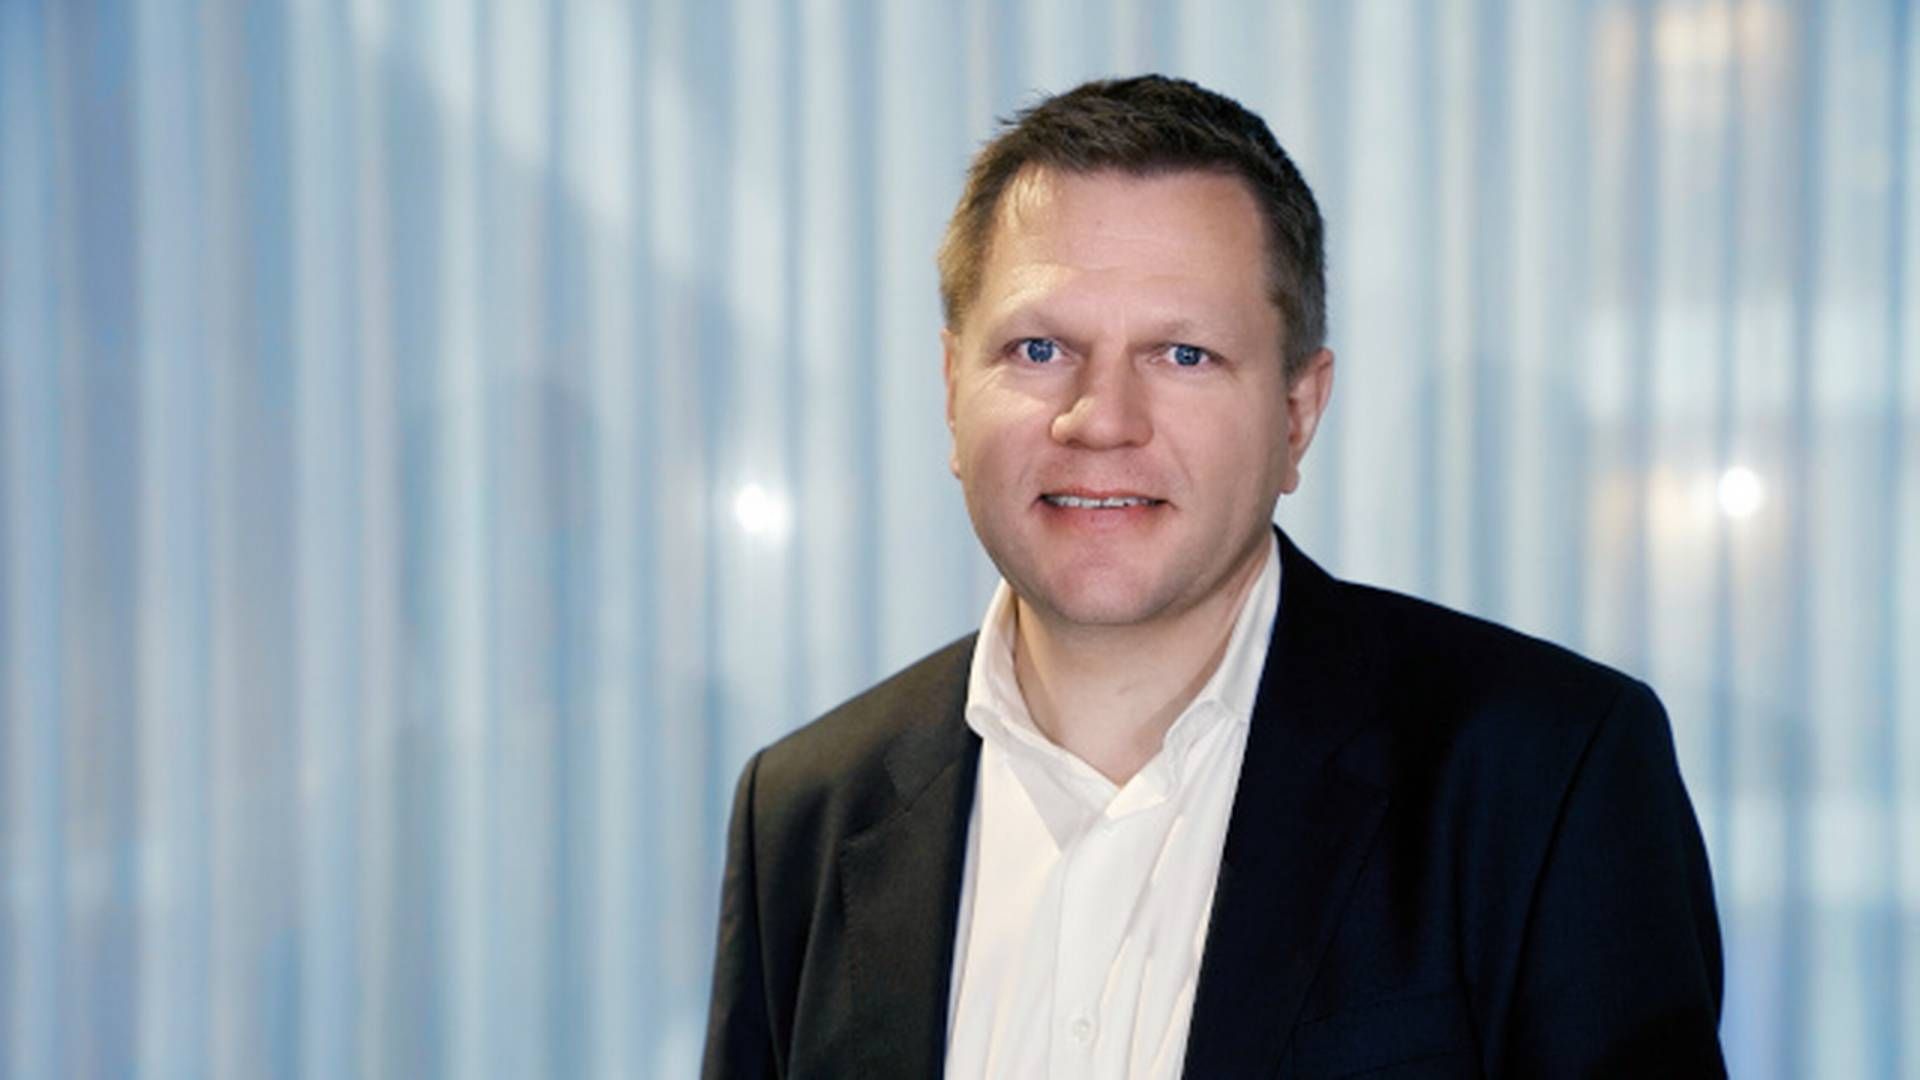 NEDJUSTERT EIENDOMSVERDIER: Investeringsdirektør Leif-Rune Rein i Nordea Liv forteller at de har nedjusert egne eiendomsverdier med 20 prosent siden august. | Foto: Nordea Liv